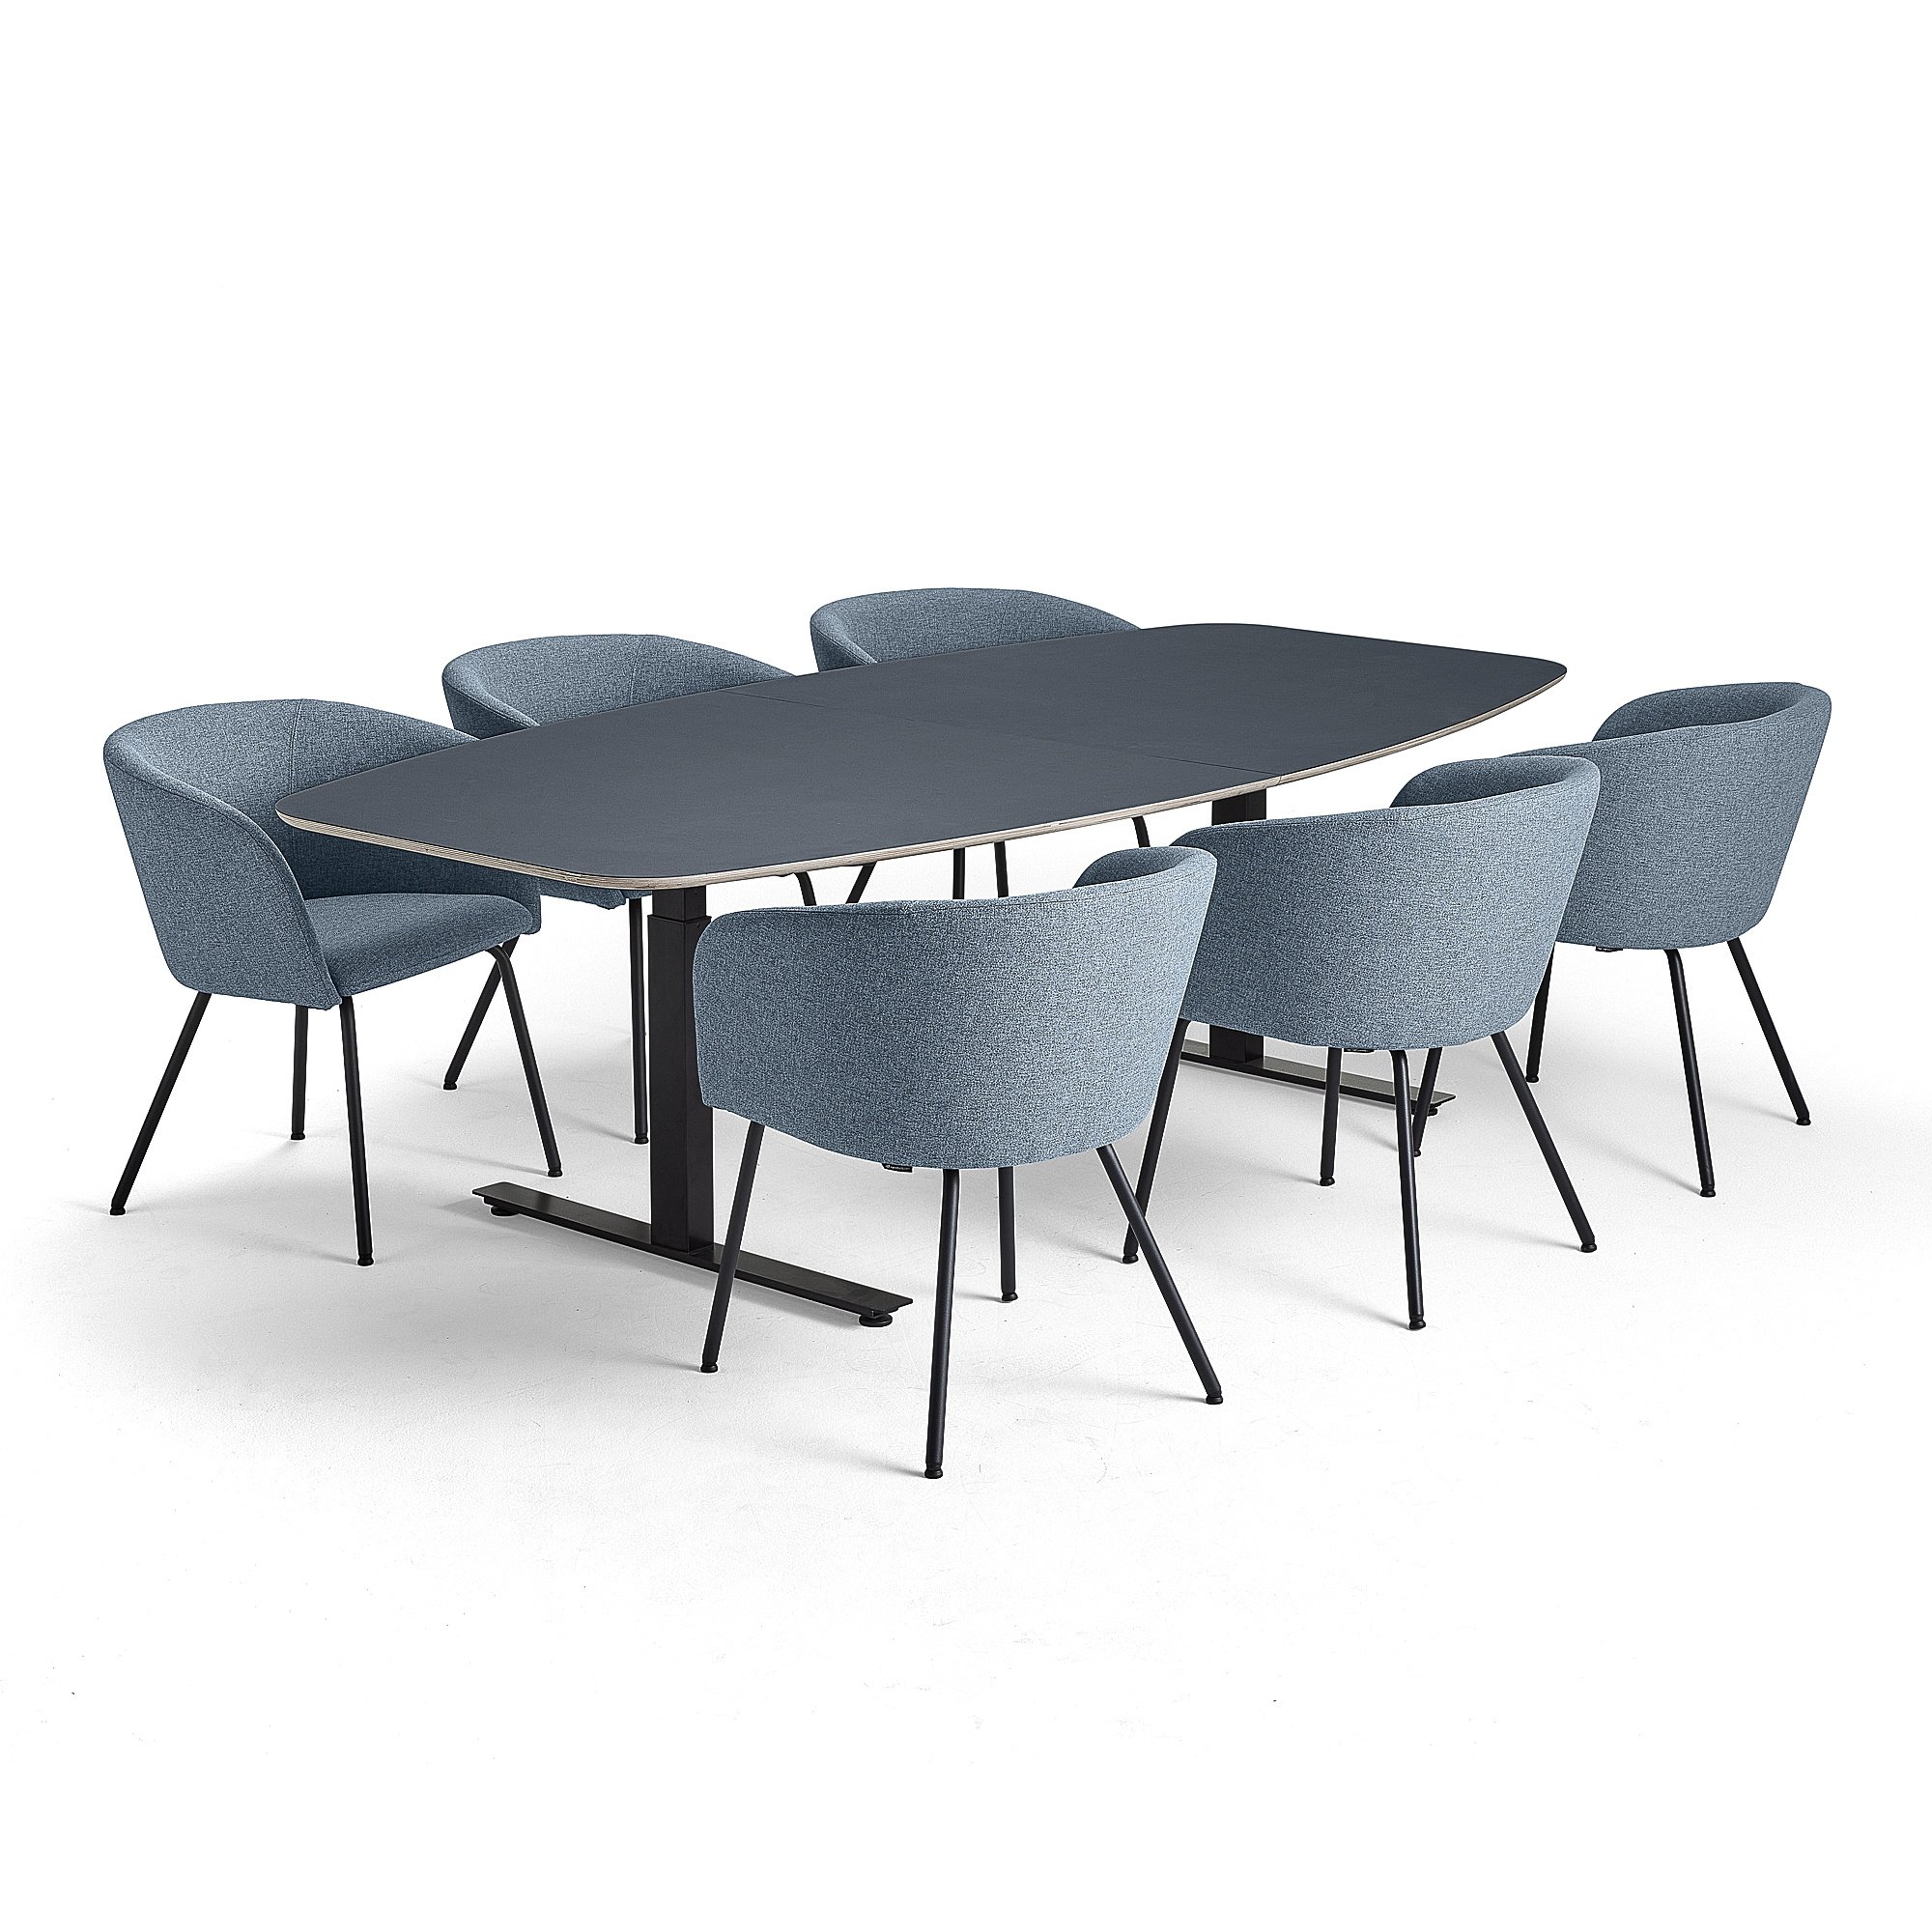 Rokovací nábytok AUDREY + HAPPY, 1 modrý stôl + 6 stoličiek, modrošedá